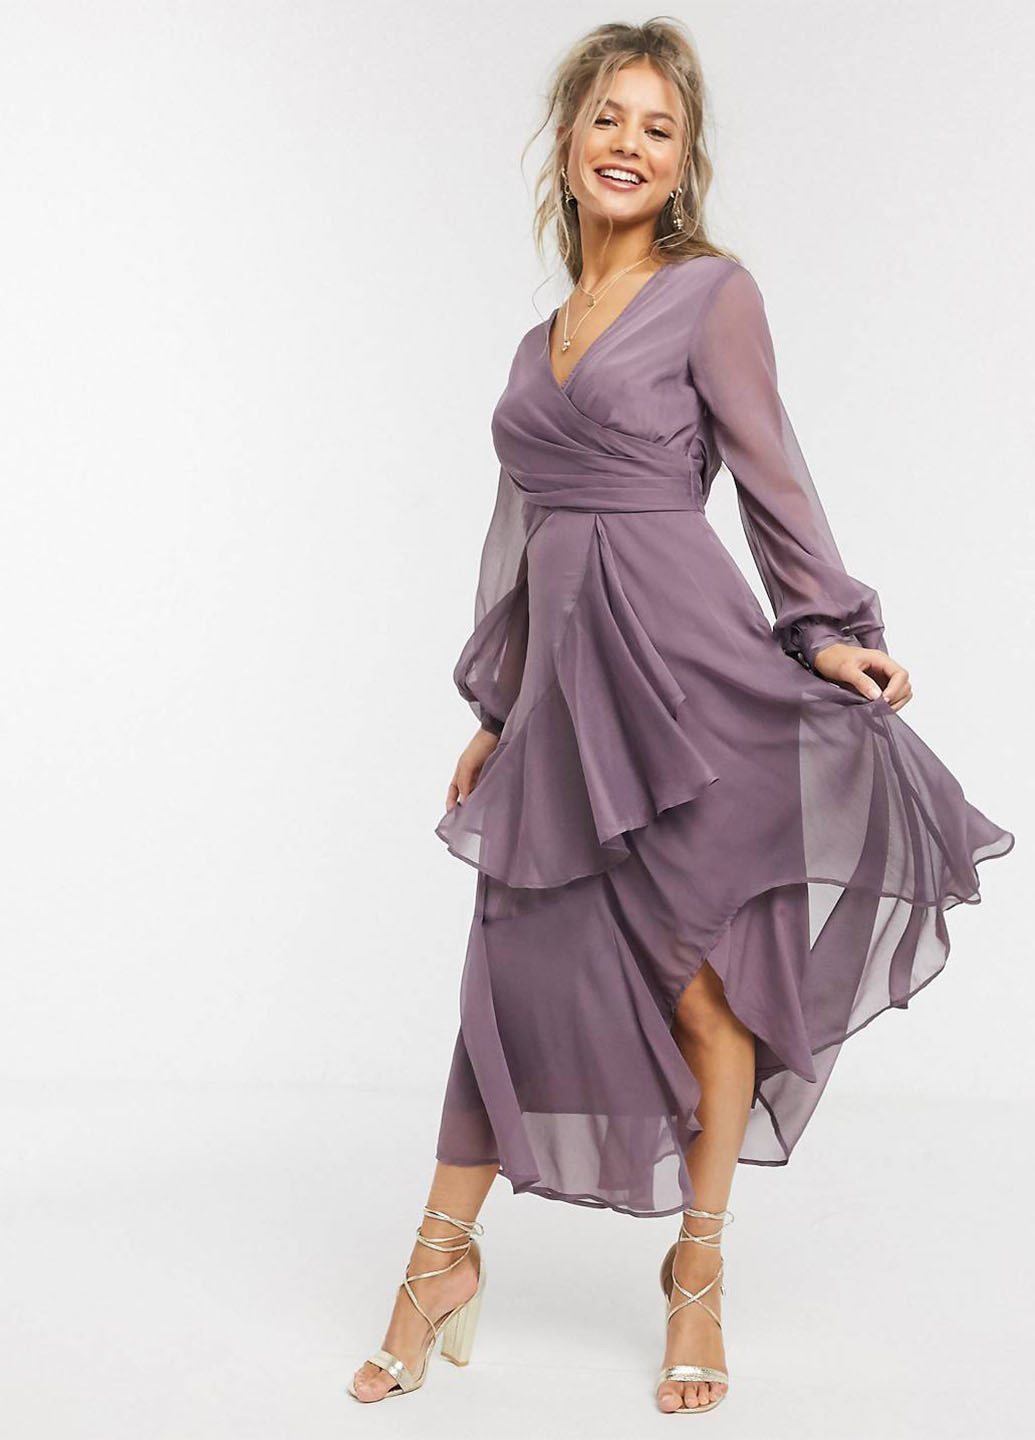 Фиолетовое коктейльное платье на запах Asos однотонное